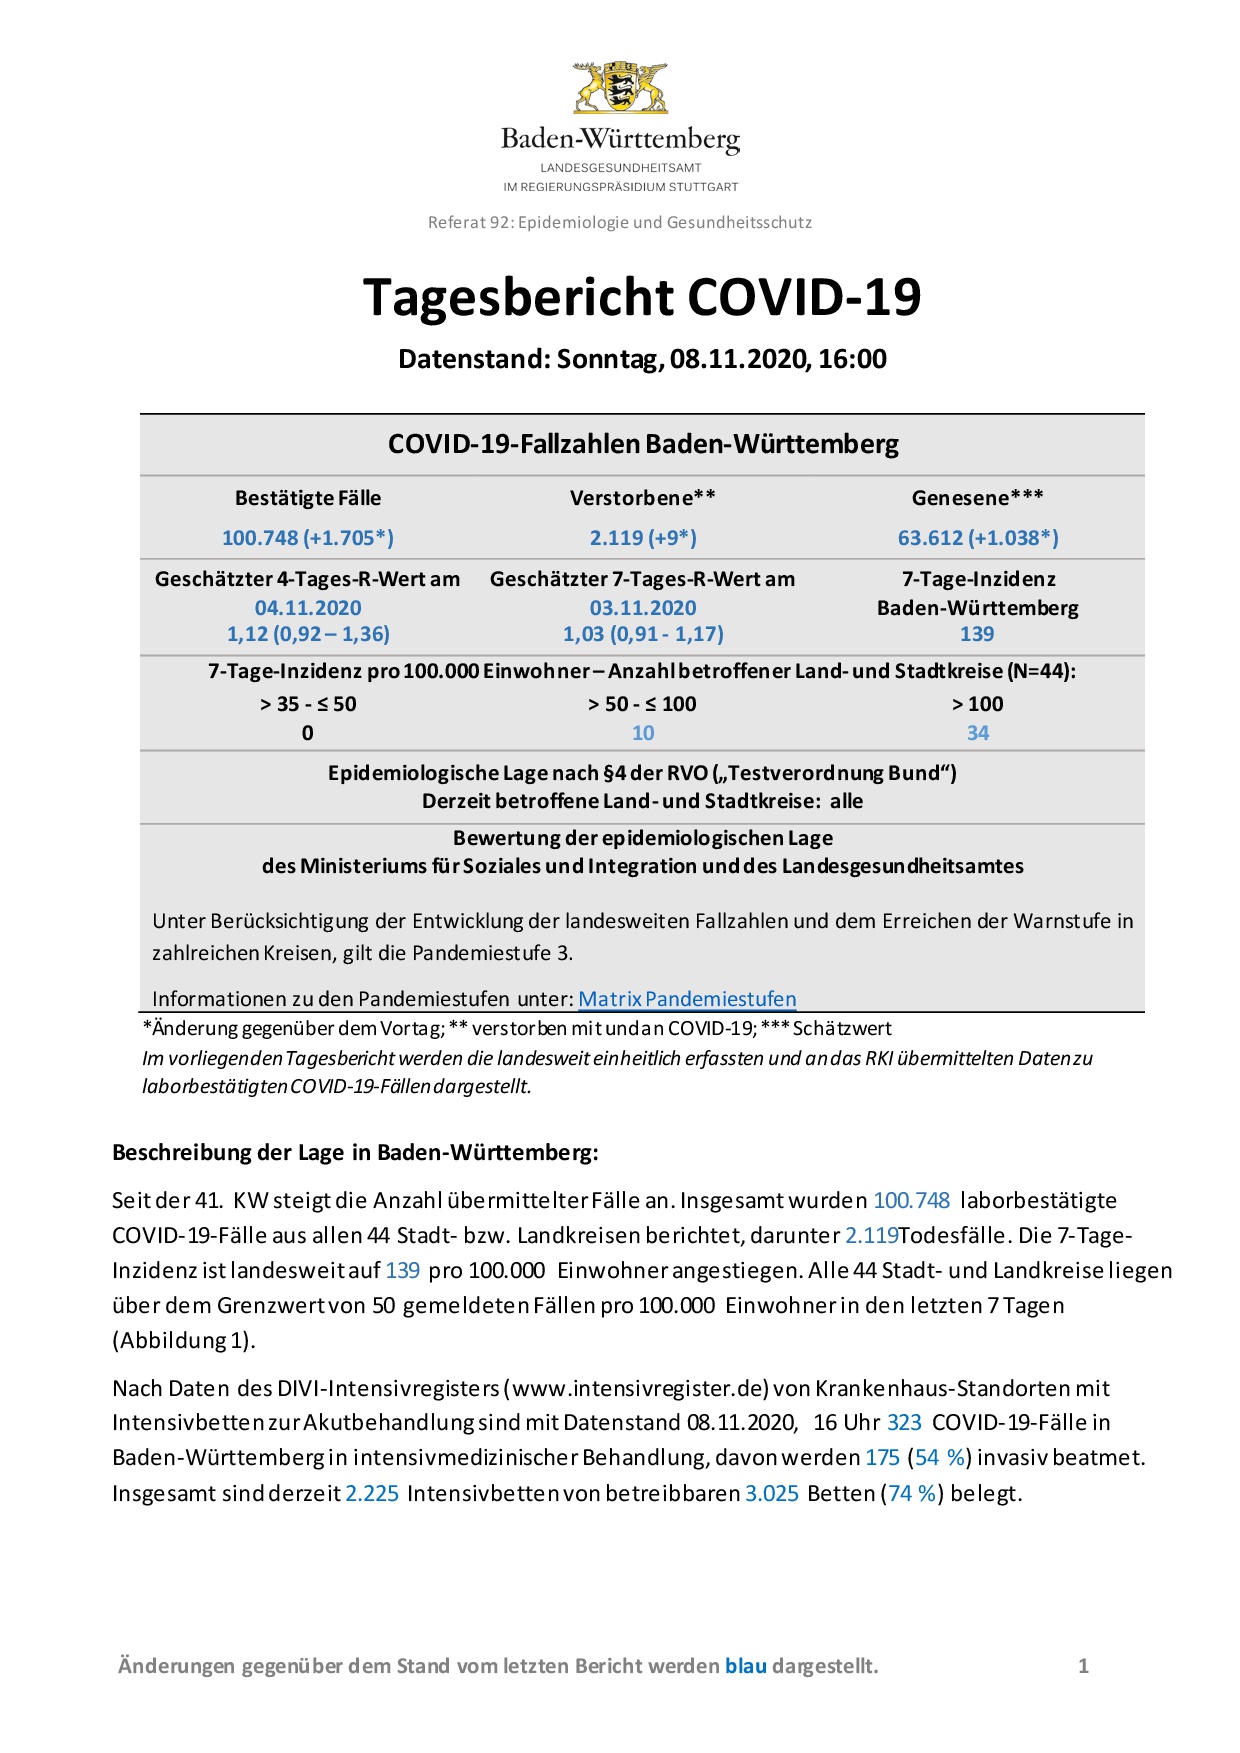 COVID-19 Tagesbericht (08.11.2020) des Landesgesundheitsamts Baden-Württemberg – (ausführlicher)